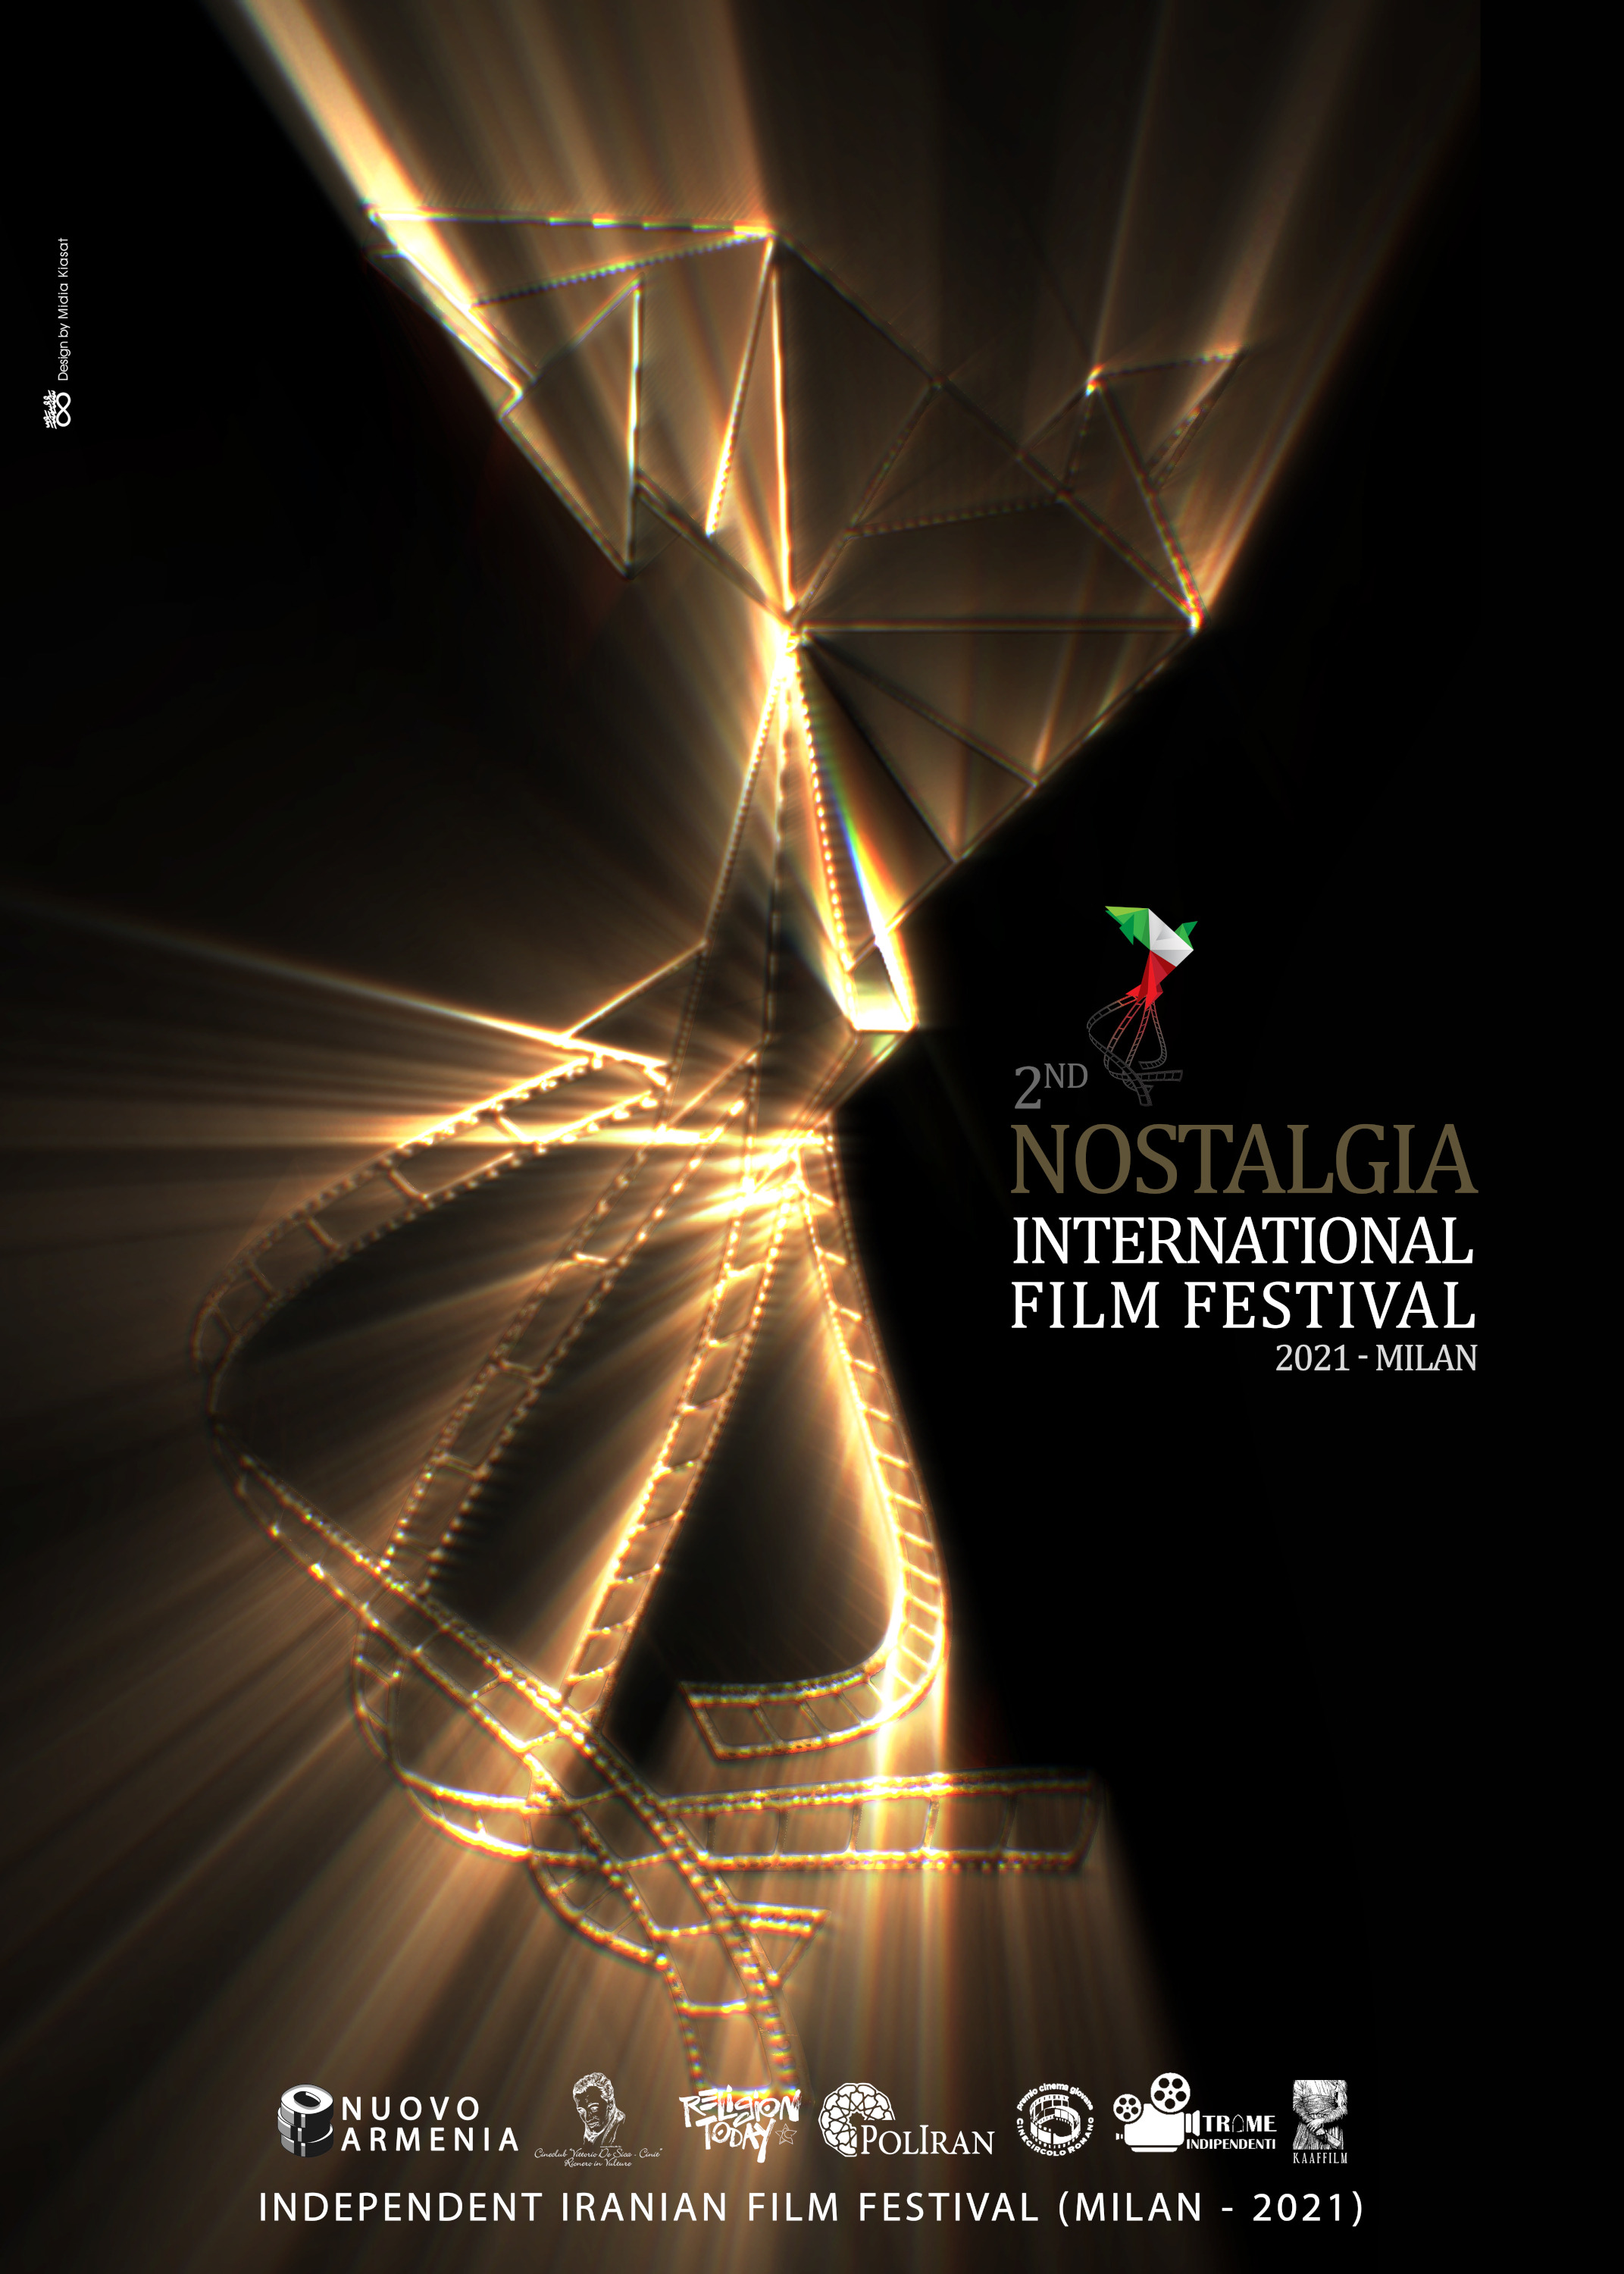 Mega Sized TV Poster Image for Nostalgia International Film Festival 